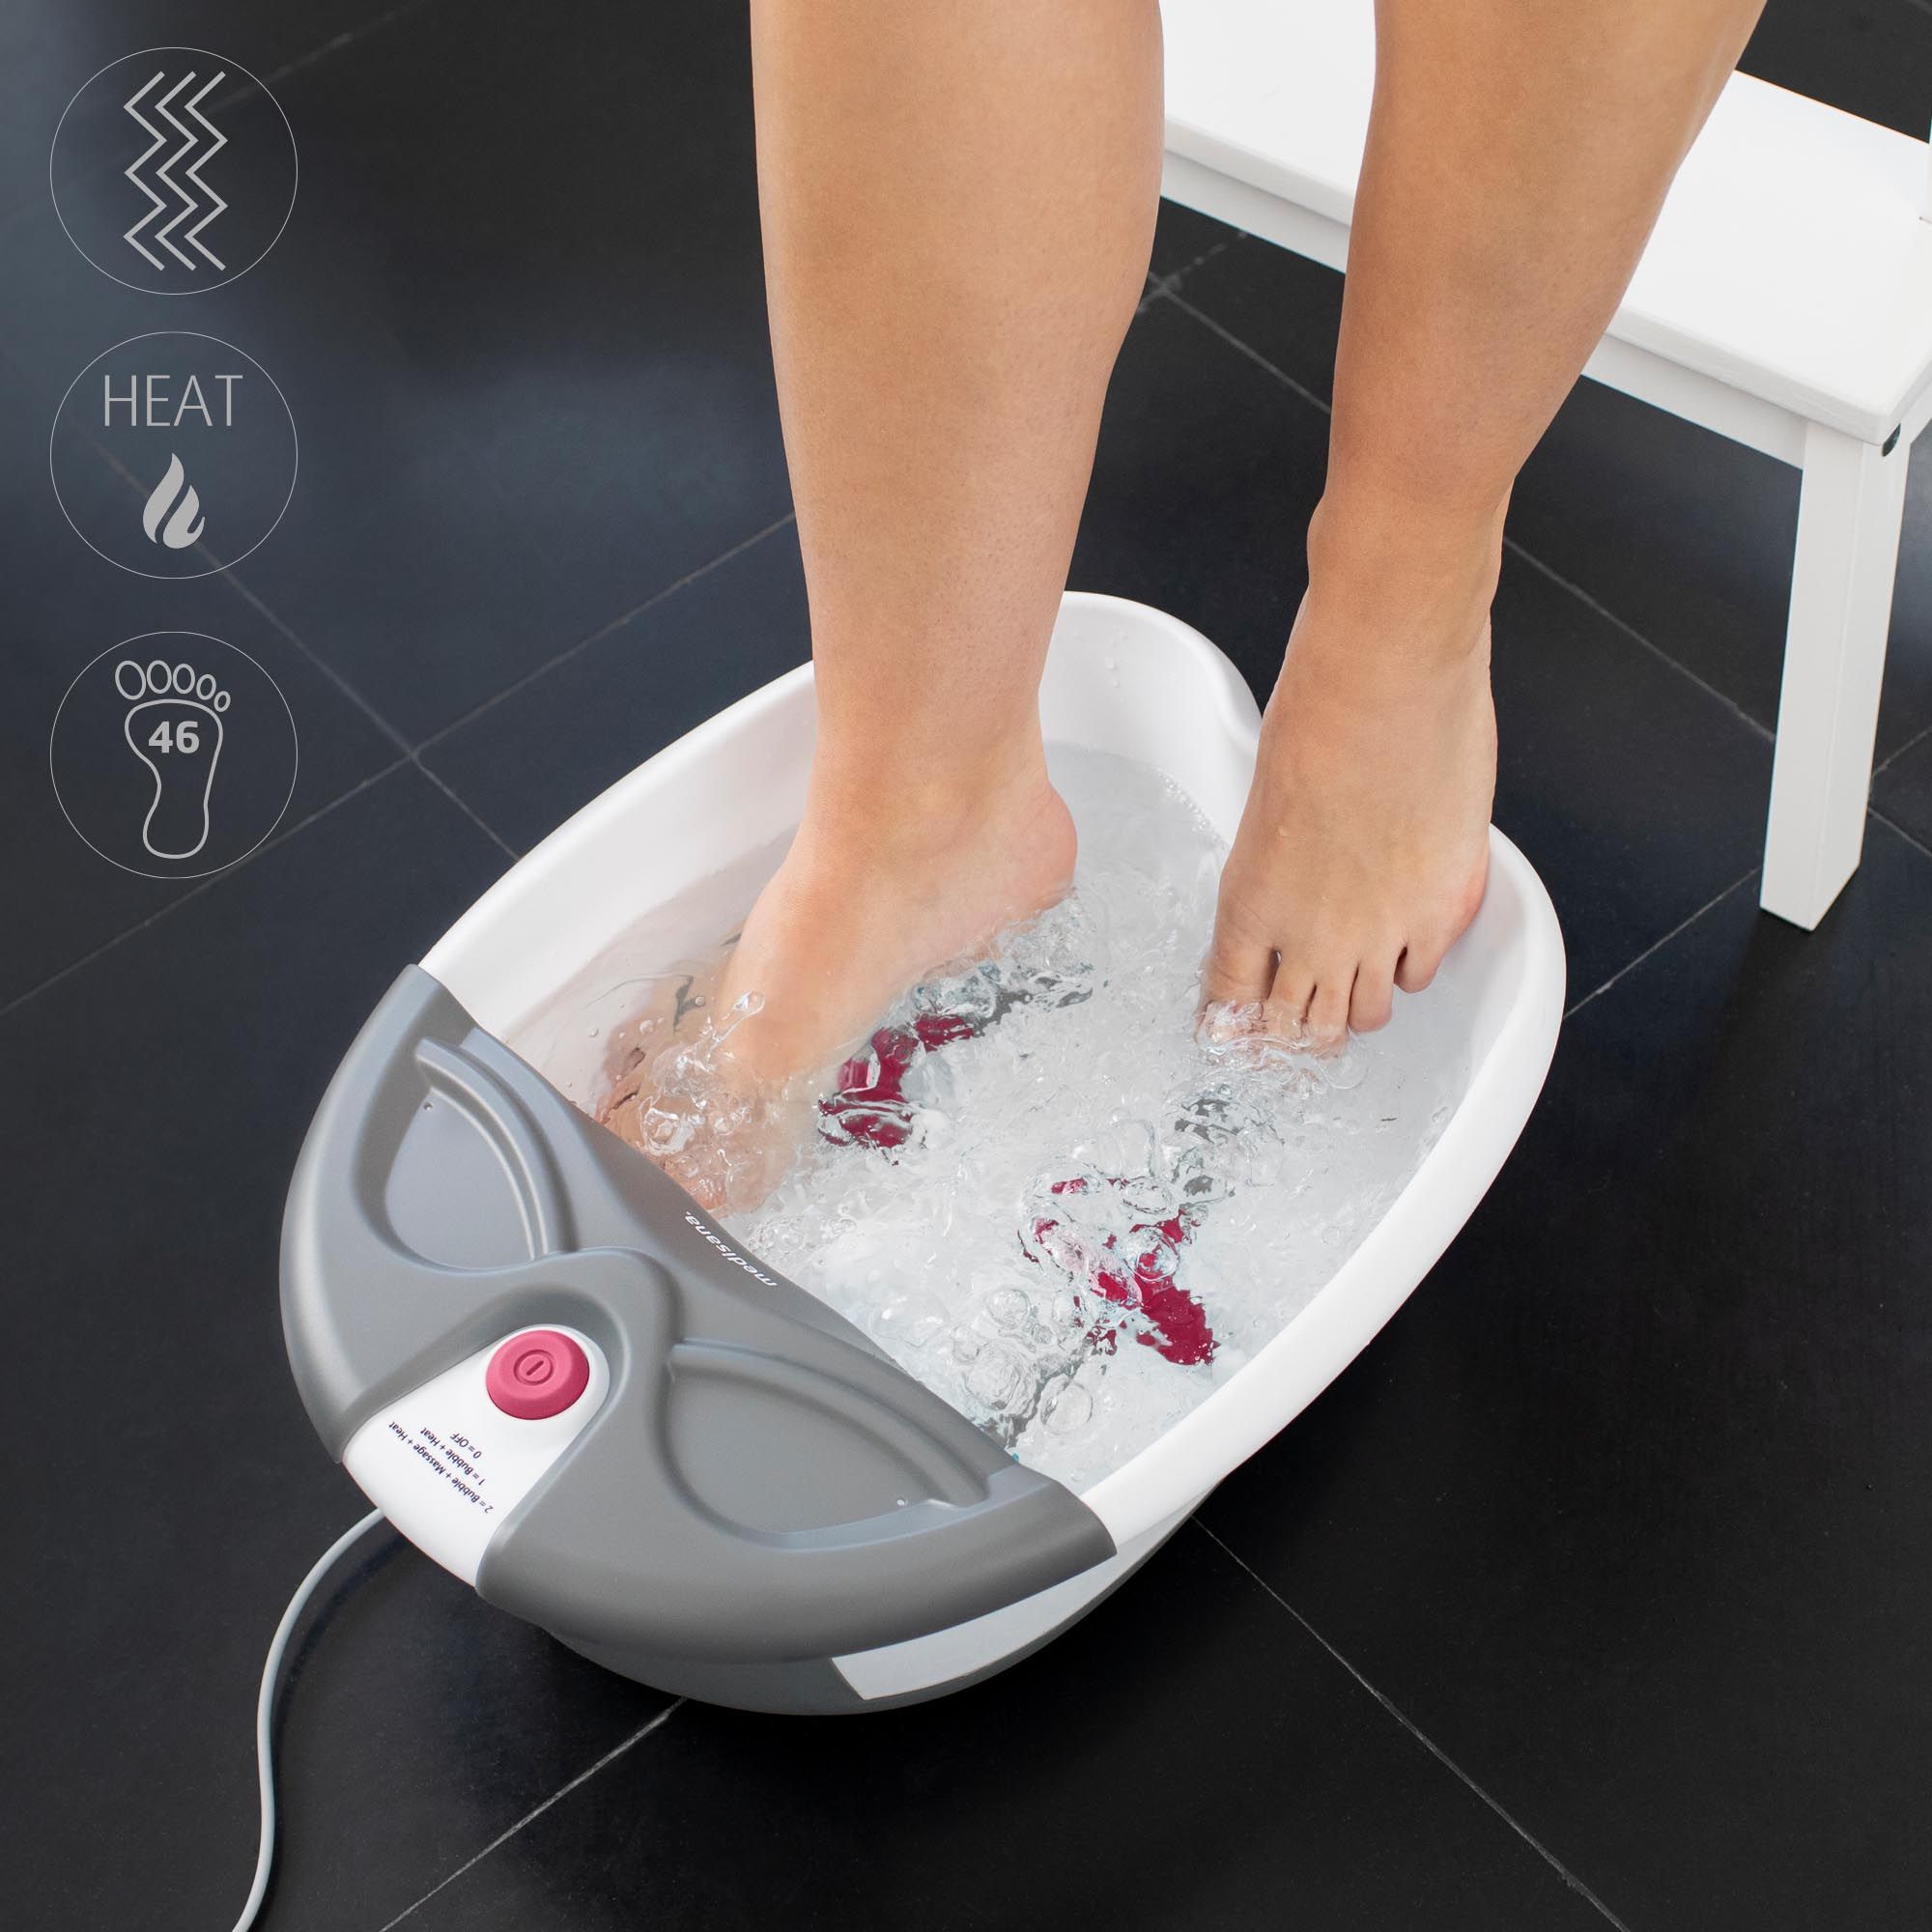 medisana FS 300 Fußsprudelbad mit Fußreflexzonenmassage, elektrisches Fußbad mit Massage und Heizung